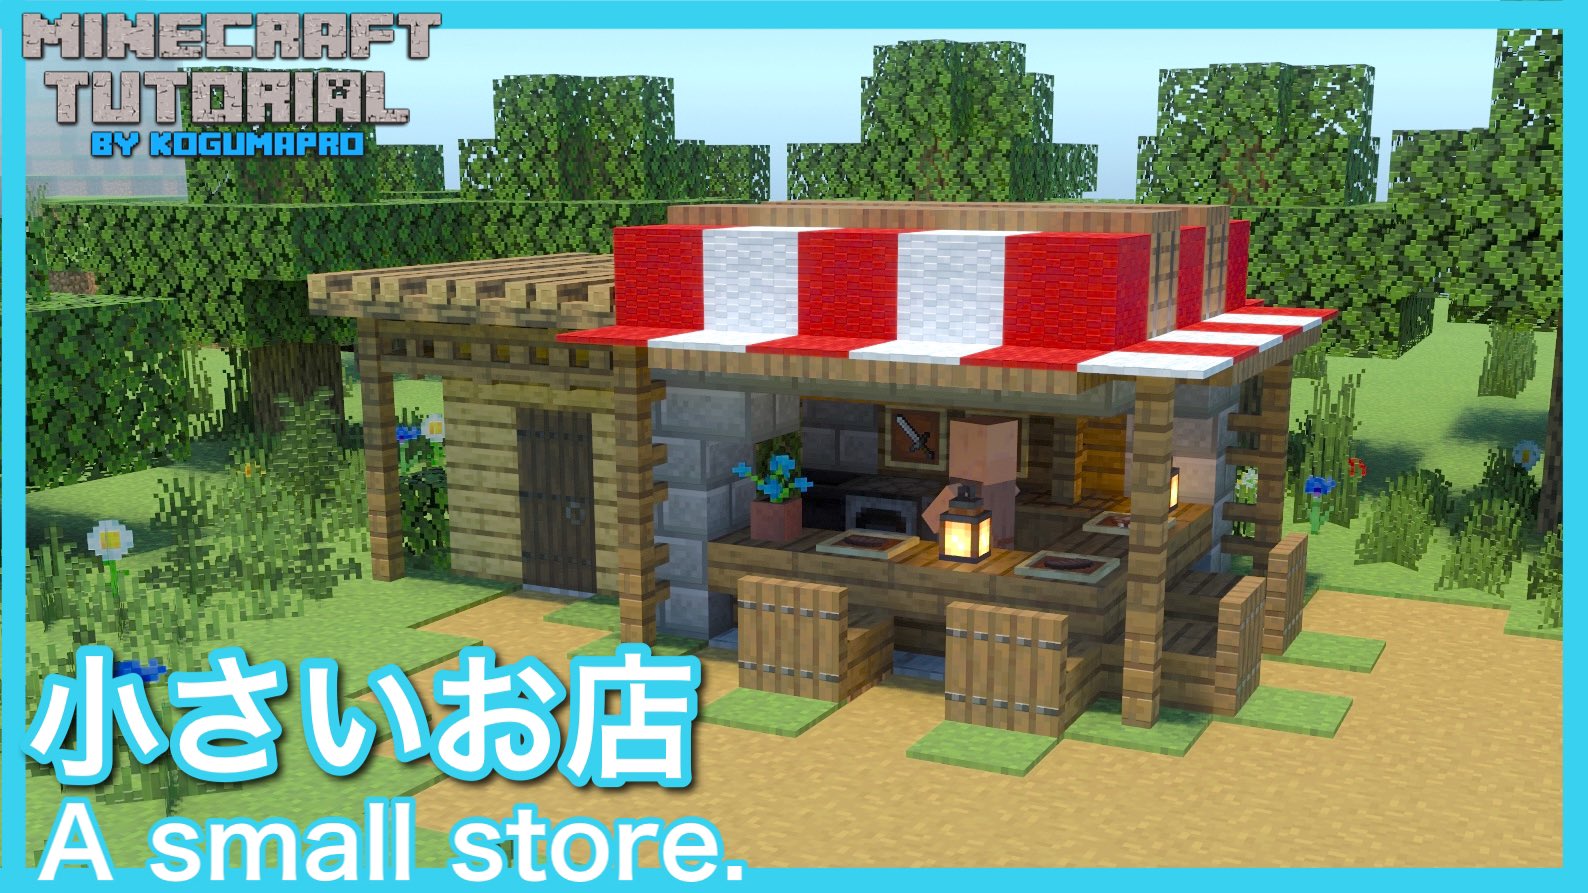 こぐまぷろ Kogumapro 在 Twitter 上 動画上げましたー 今回は小さなお店の紹介です 街の広場や 商店街などにどうでしょう 良かったら覗いてやって下さい マインクラフト マイクラ Minecraft マイクラ建築 動画 T Co 3bufahymrl T Co